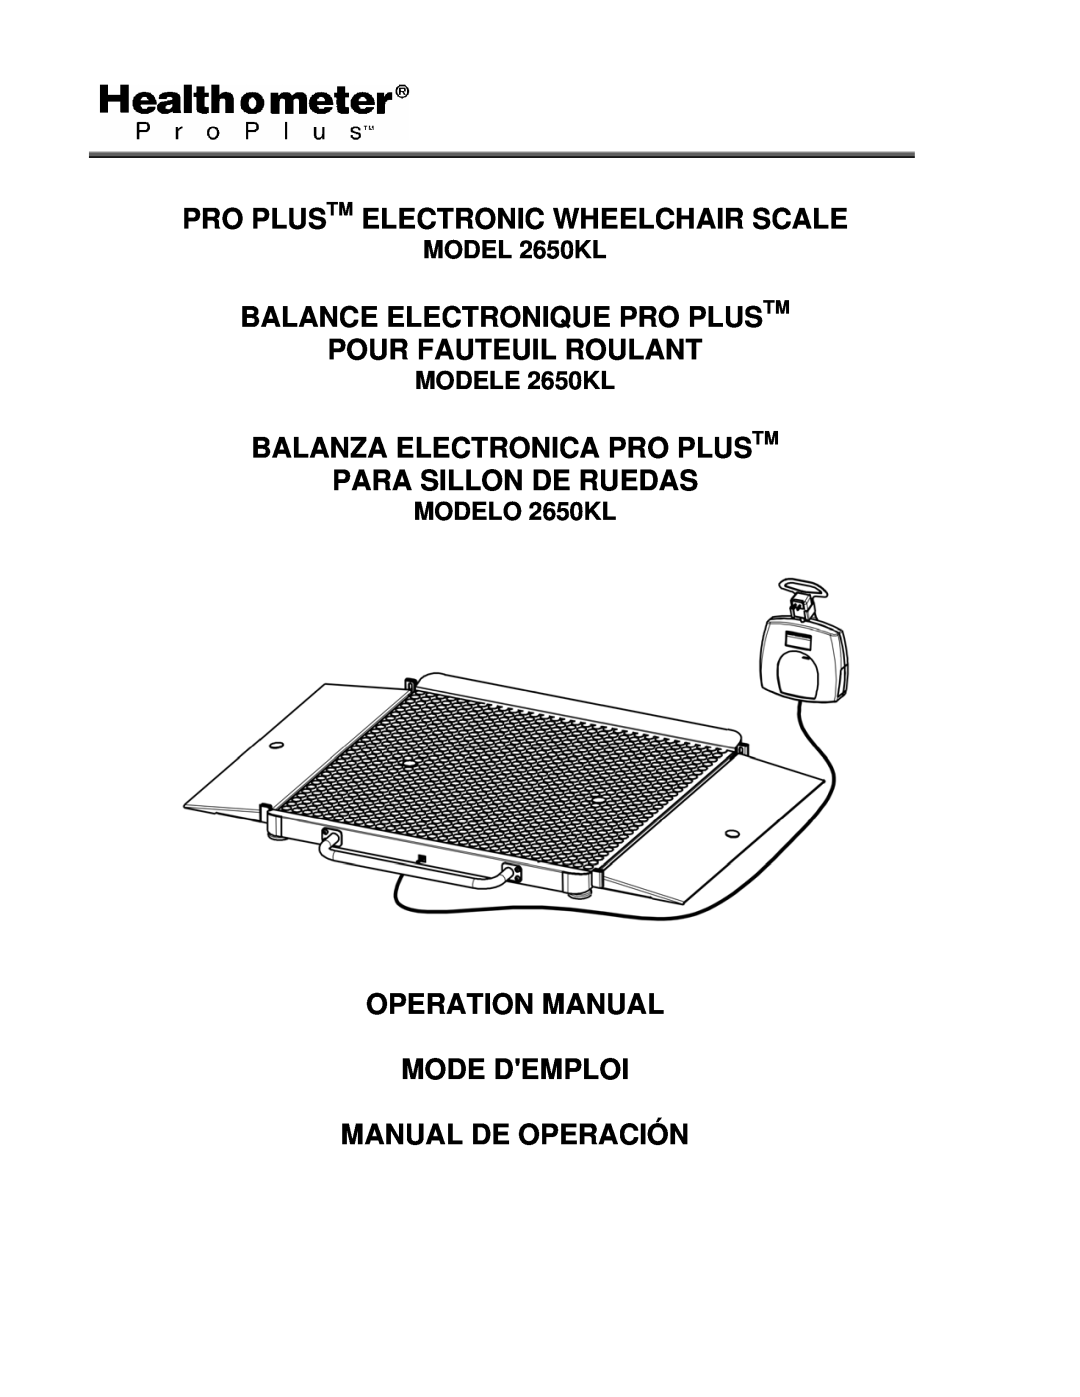 Health O Meter operation manual Pro Plustm Electronic Wheelchair Scale, MODEL 2650KL, MODELE 2650KL, MODELO 2650KL 